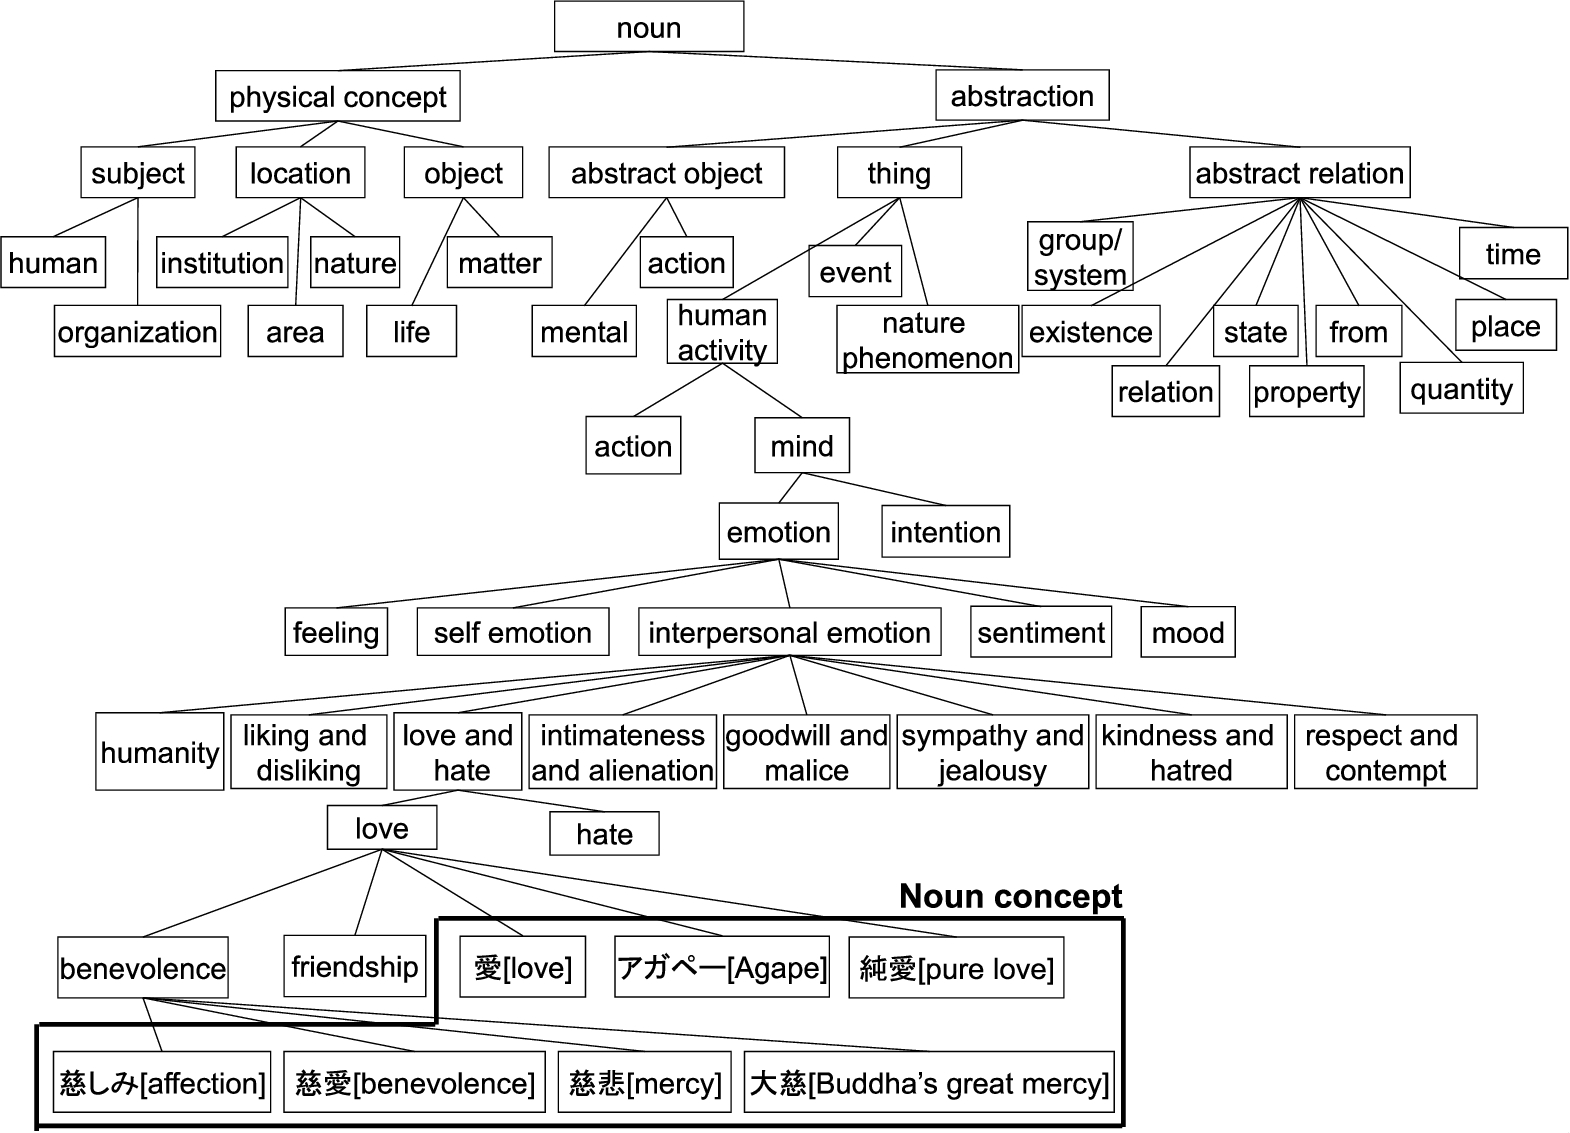 Details of the noun conceptual dictionary (partially).